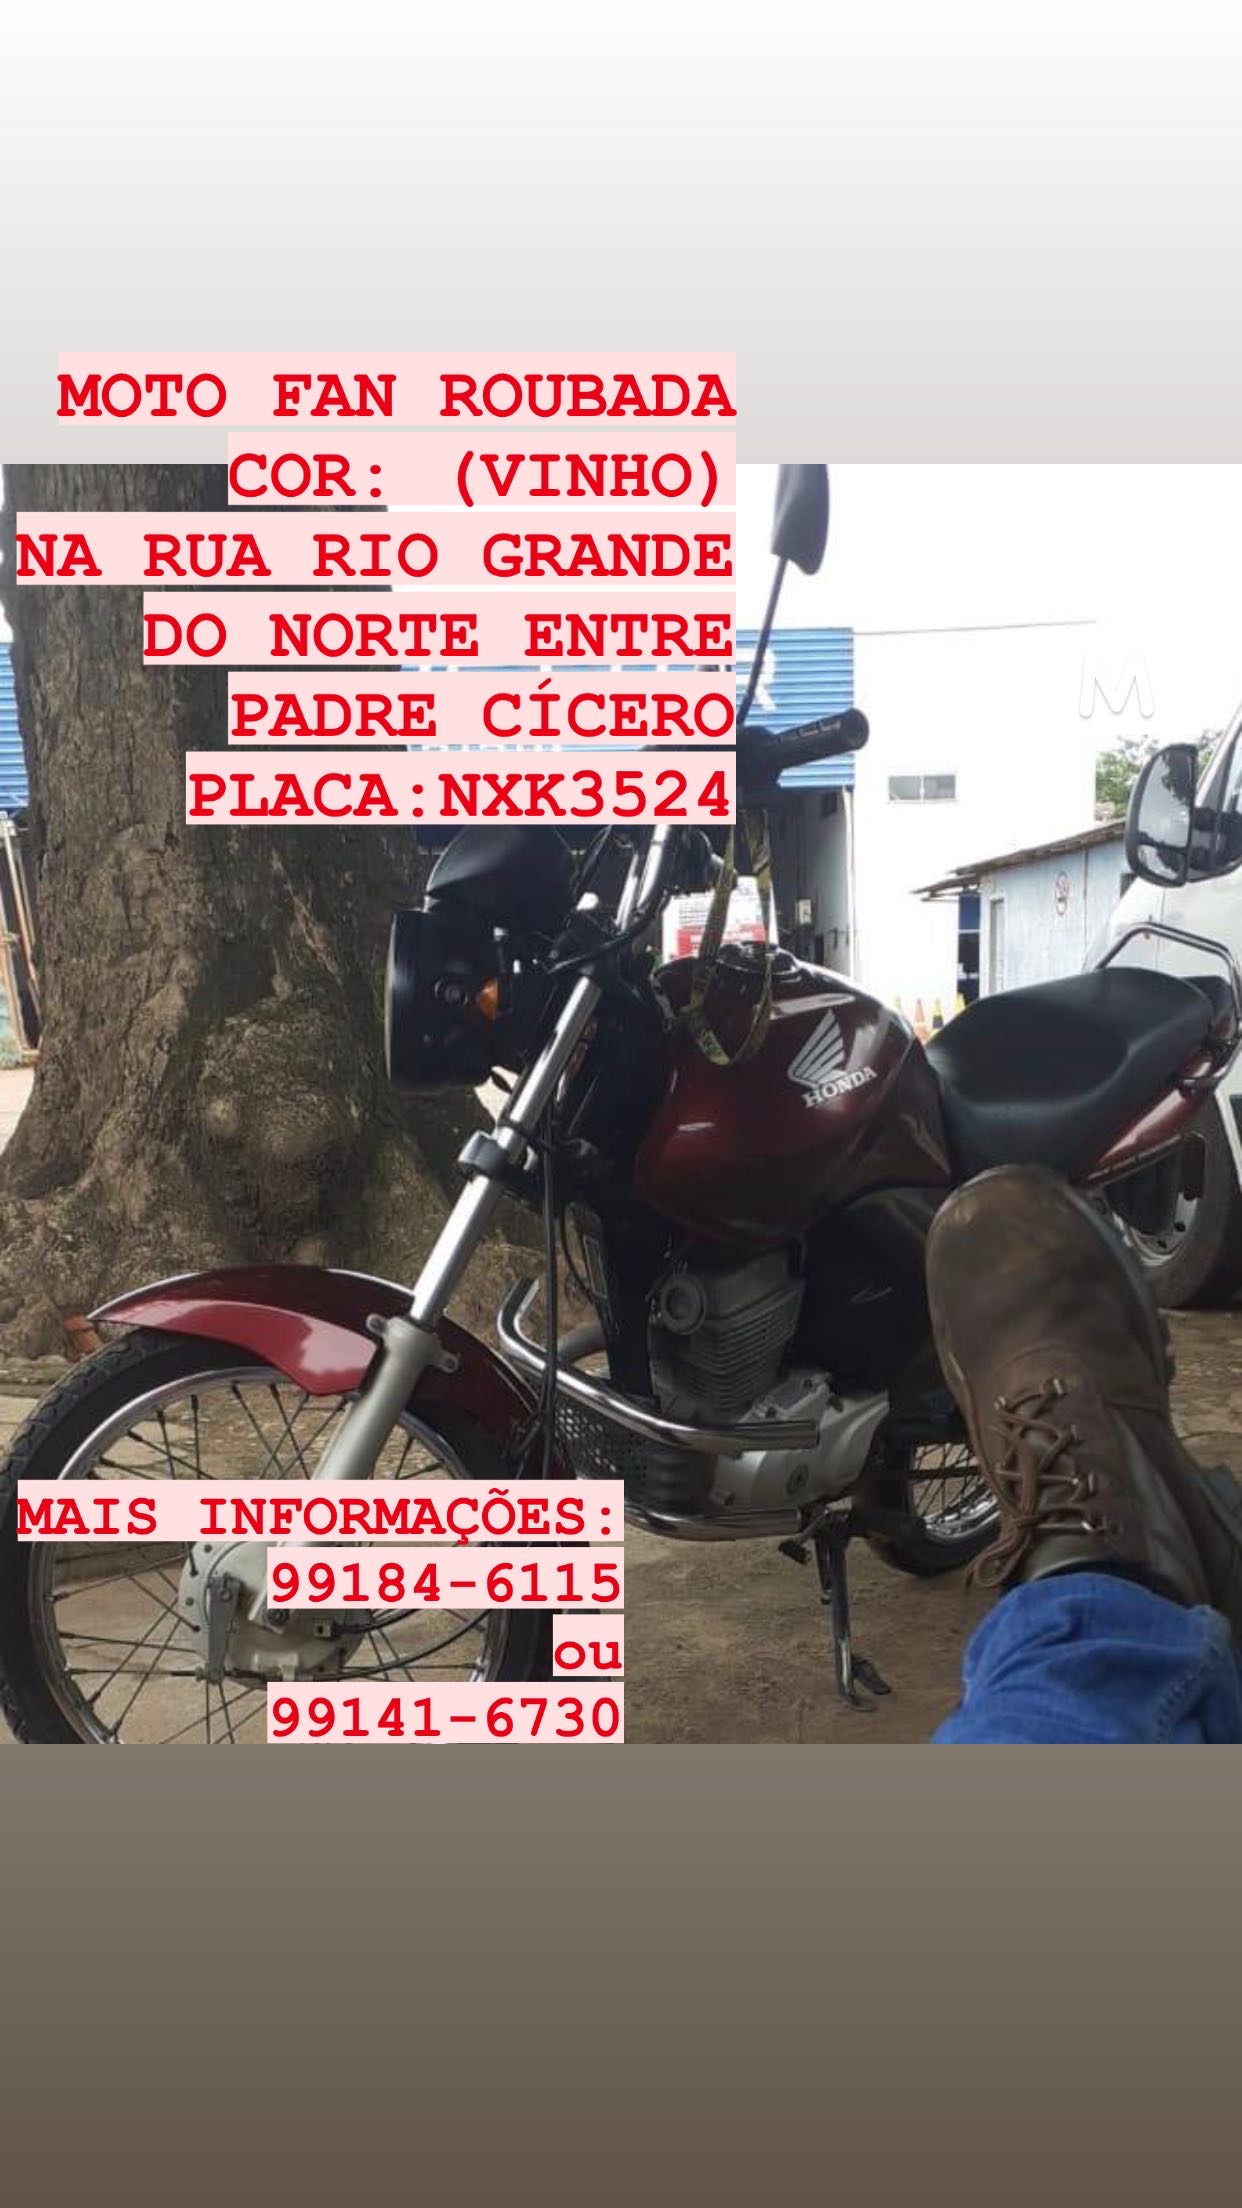 Moto Roubada Fan Vinho (Placa NXK3534)